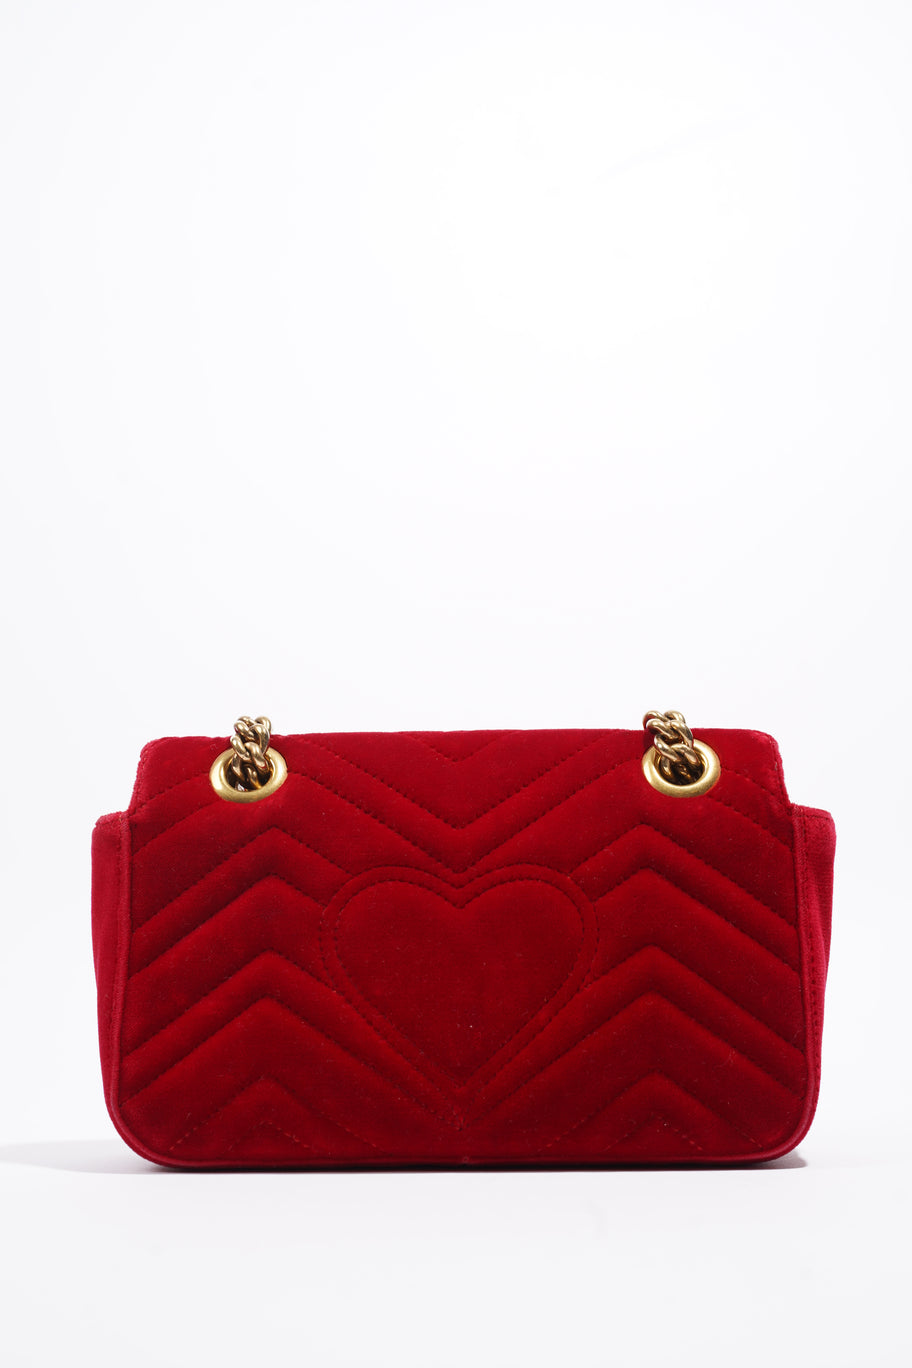 GG Marmont Bag Red Velvet Mini Image 4